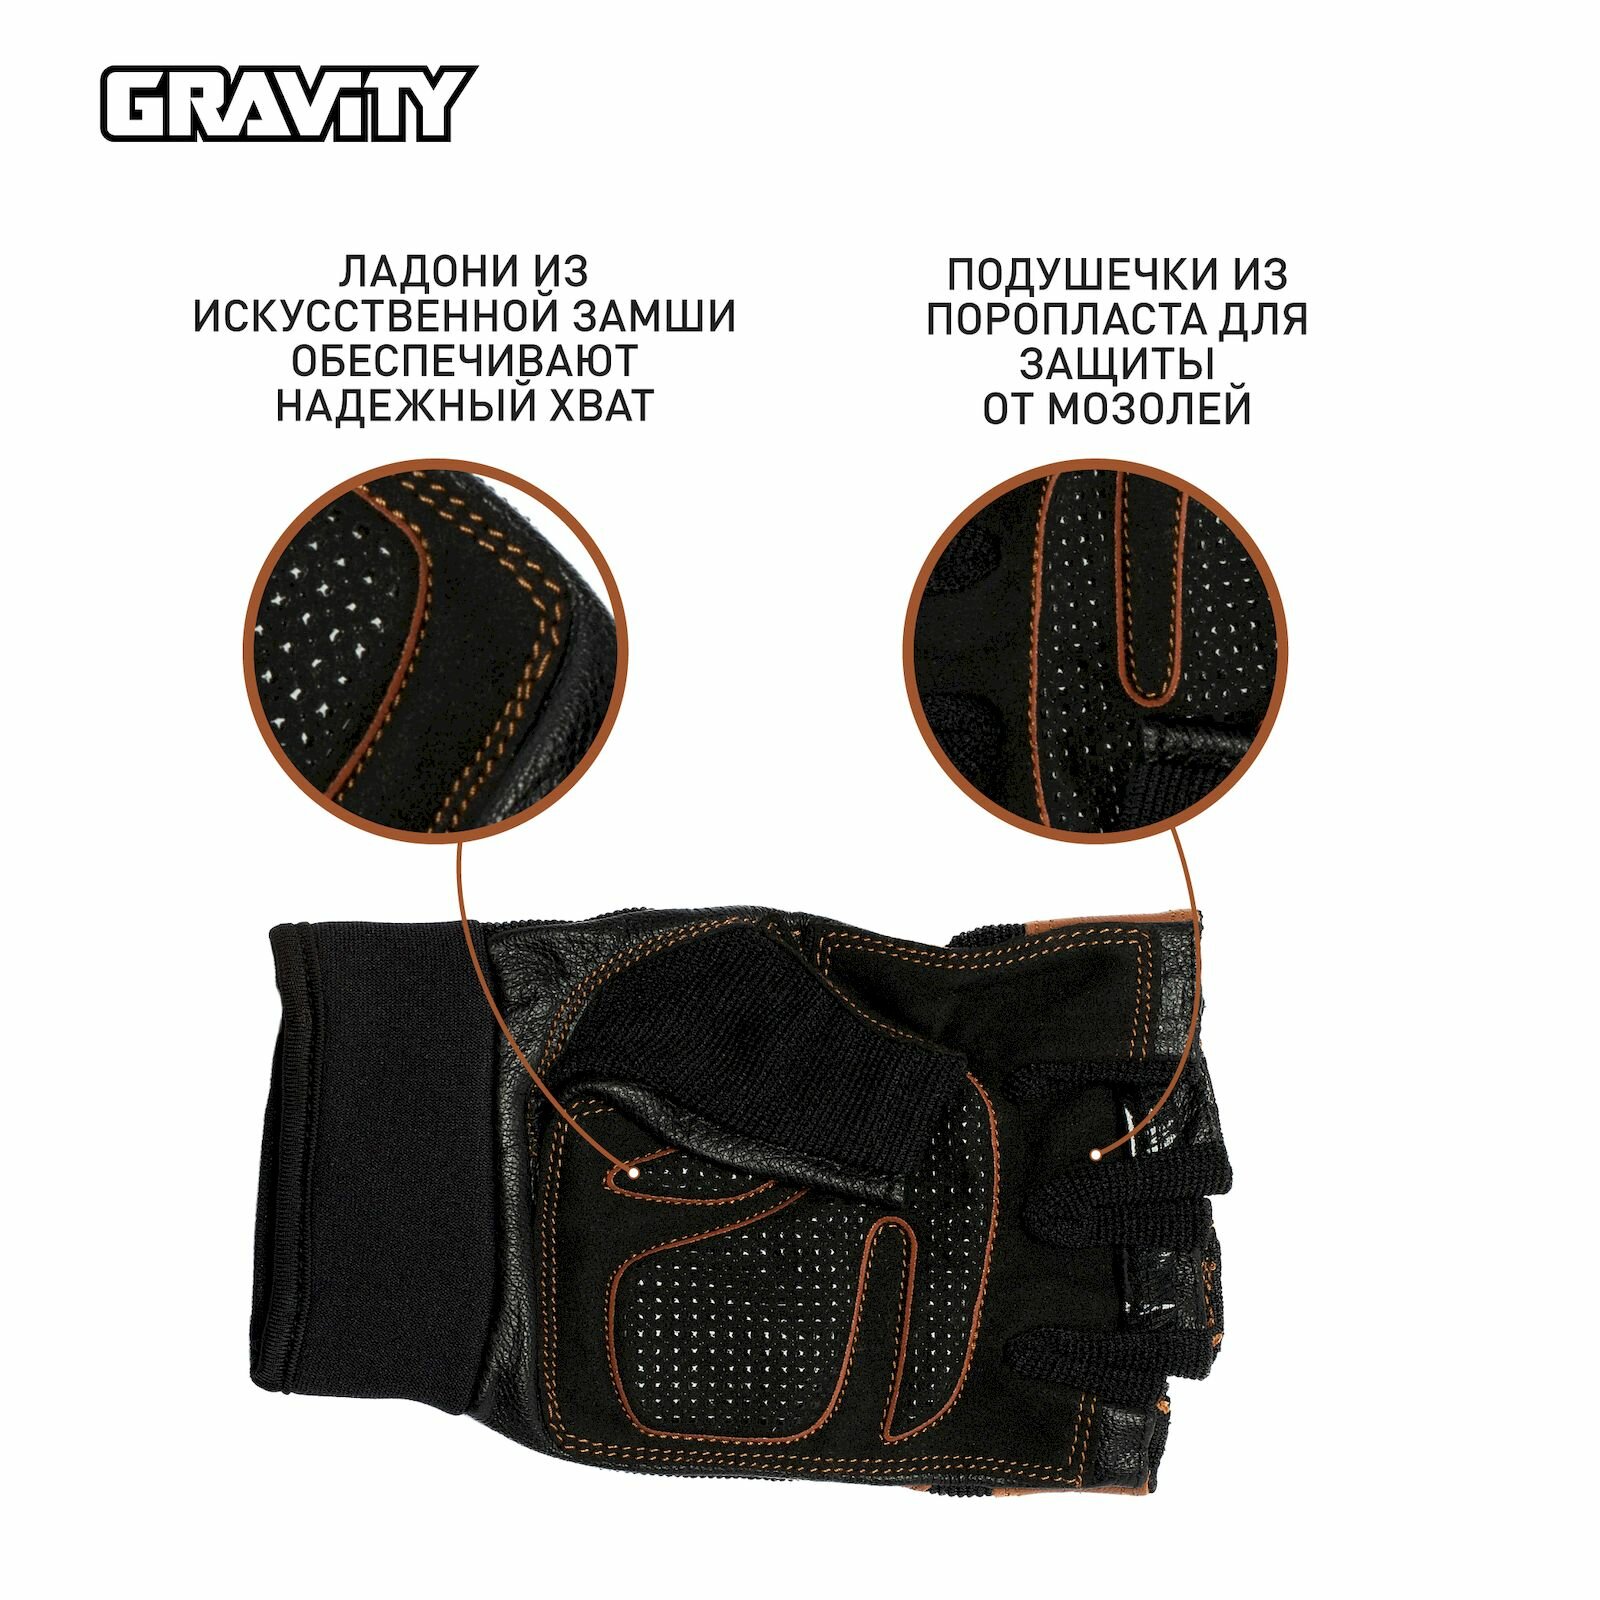 Мужские перчатки для фитнеса Gravity Power System Training черно-коричневые, L